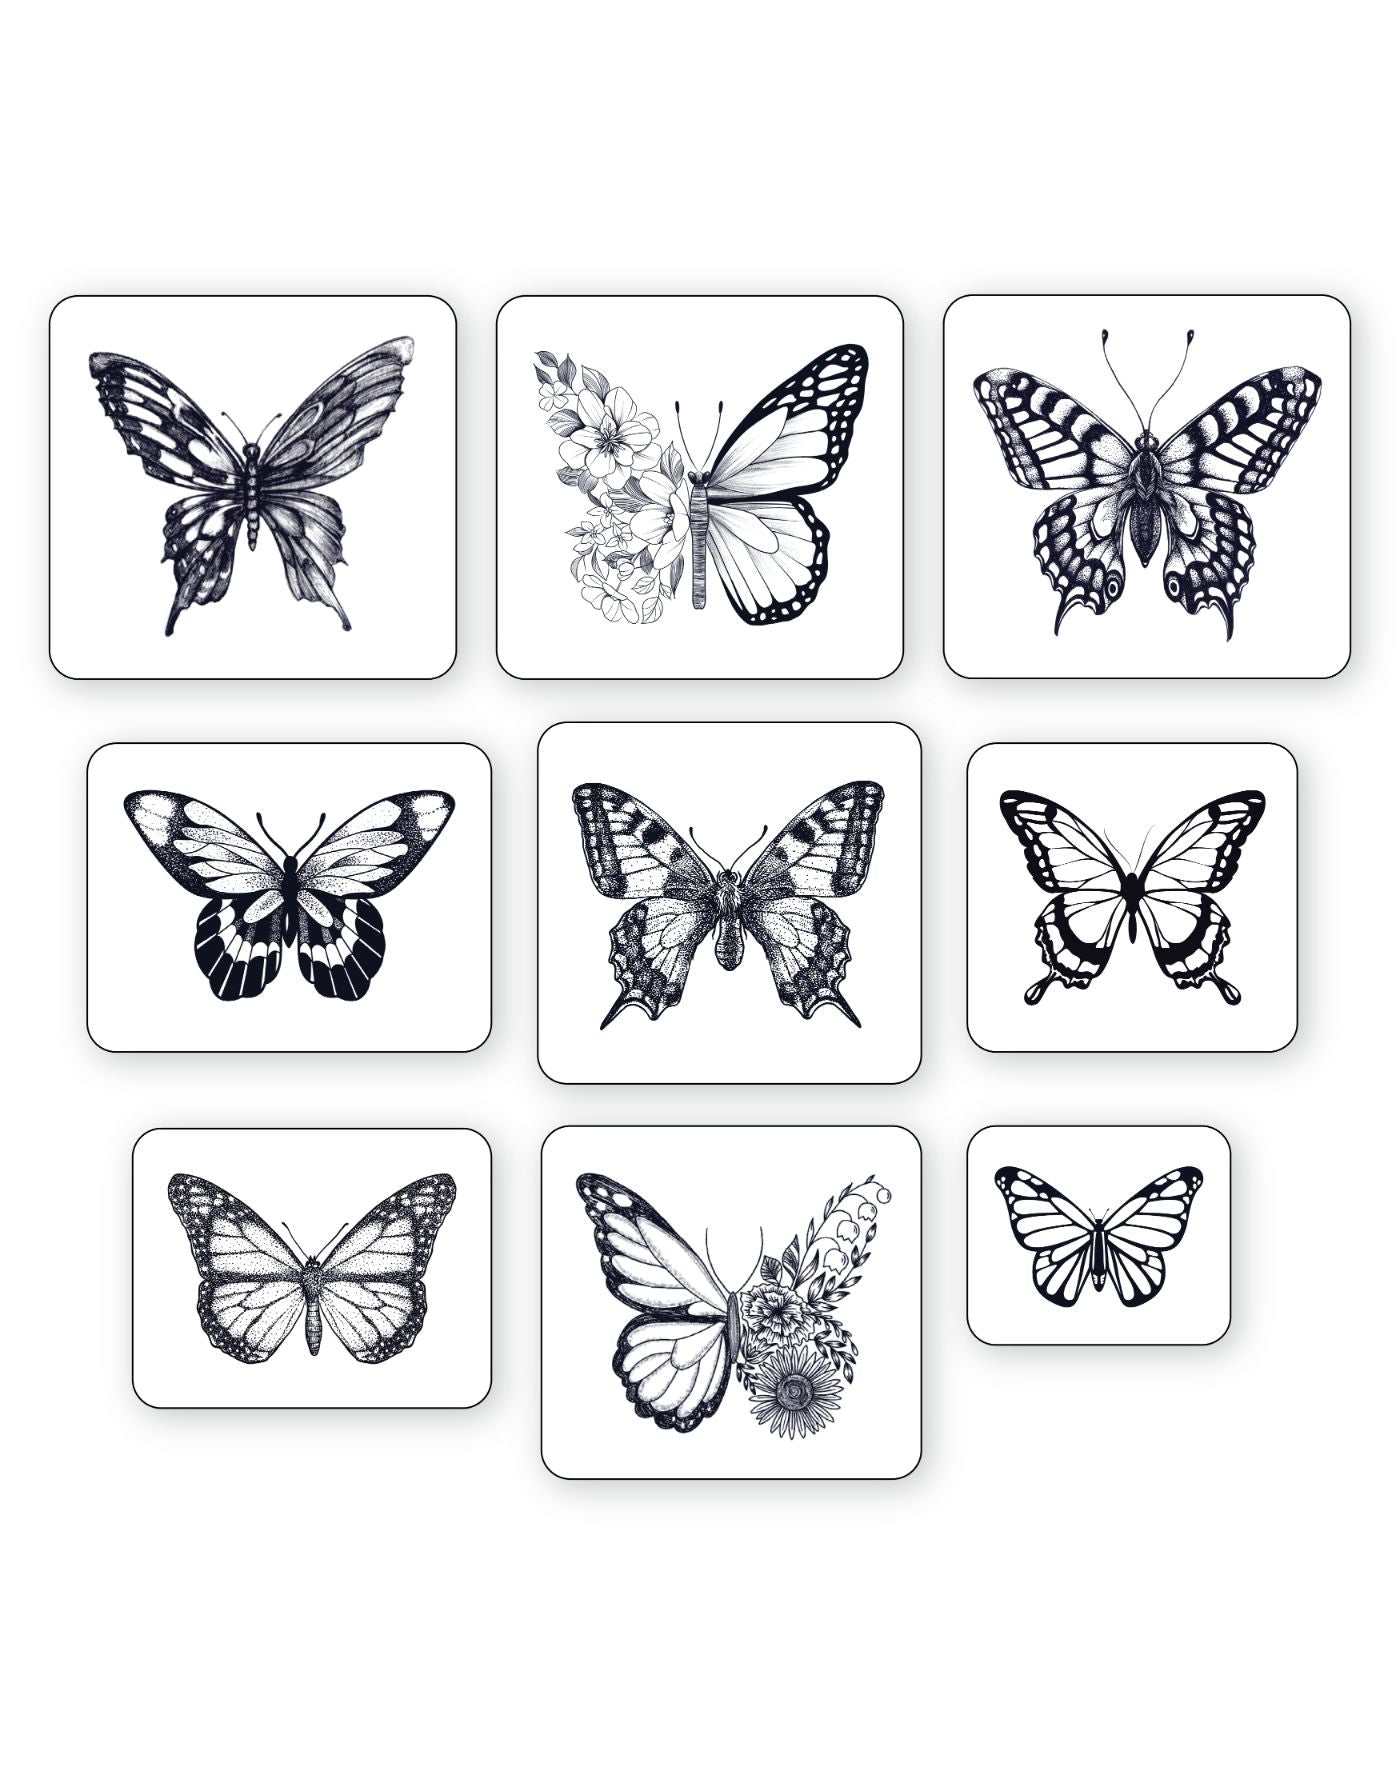 (9 Tattoos) Butterfly Diaries - Semi-Permanent Tattoos